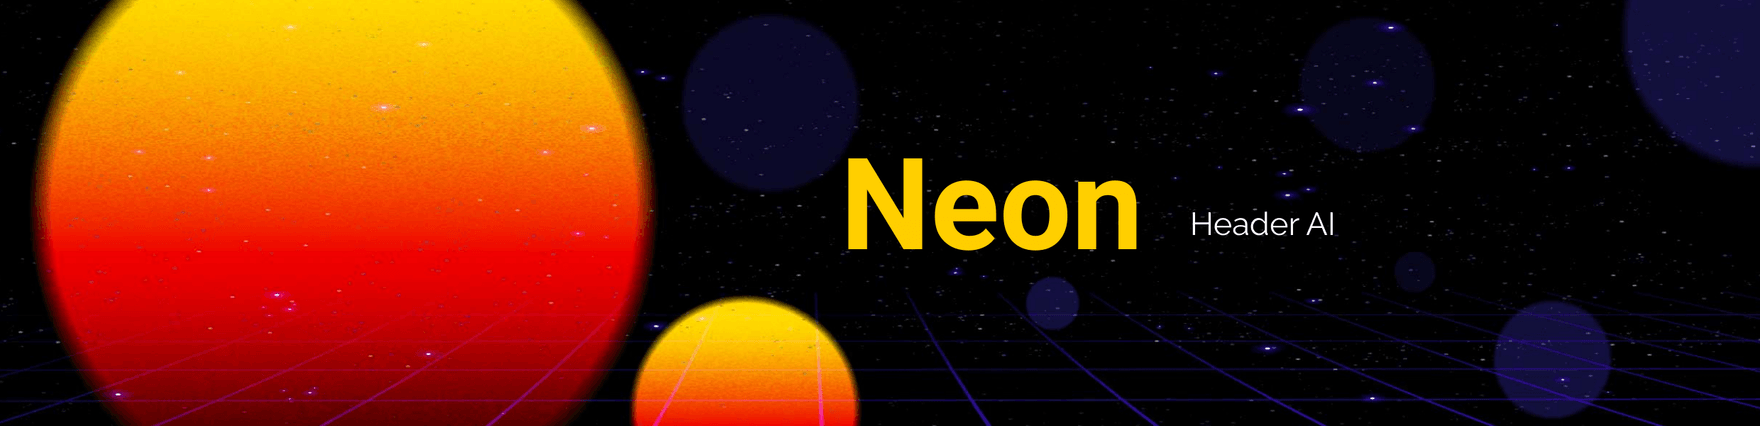 Neon Header AI Template